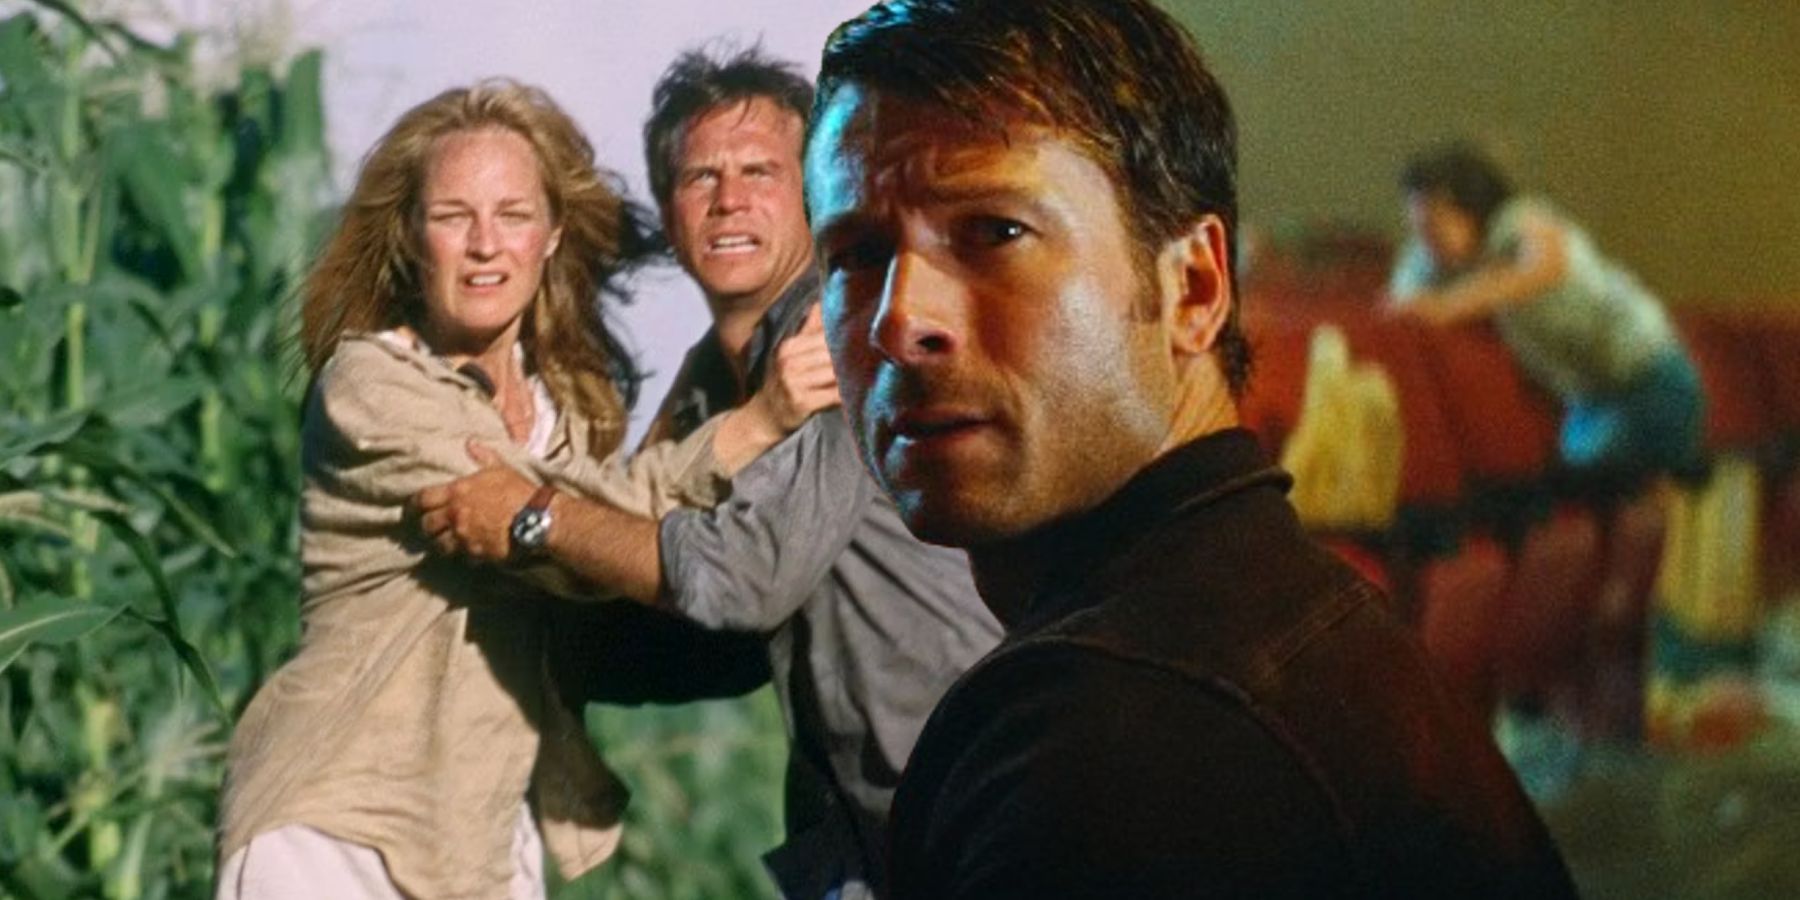 Por qué Twisters no reproducirá un detalle clave y famoso de la película original de desastres de 1996: “Te decepcionarías”